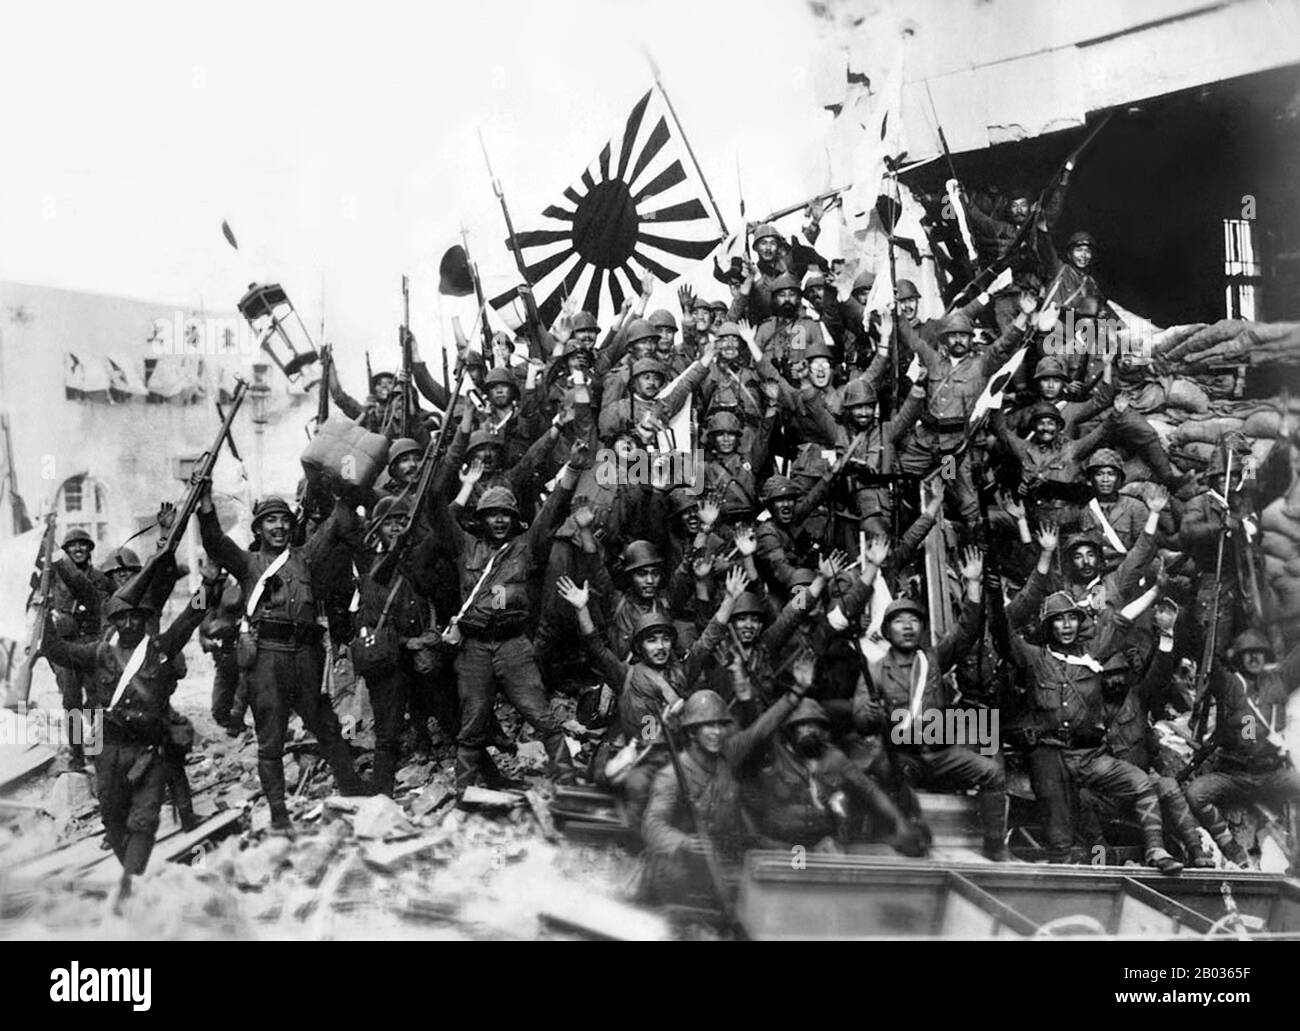 Der Zweite Chinesisch-Japanische Krieg (7. Juli 1937 - 9. September 1945) war ein militärischer Konflikt, der vor allem zwischen der Republik China und dem Reich Japans ausgetragen wurde. Nach dem japanischen Angriff auf Pearl Harbor verschmolz der Krieg in den größeren Konflikt des zweiten Weltkriegs als eine Hauptfront dessen, was allgemein als Pazifikkrieg bekannt ist. Obwohl die beiden Länder seit 1931 mit Unterbrechungen gekämpft hatten, begann der totale Krieg 1937 ernsthaft und endete erst mit der Kapitulation Japans 1945. Der Krieg war das Ergebnis einer jahrzehntelangen japanischen imperialistischen Politik, die darauf abzielte, China politisch und militärisch zu beherrschen Stockfoto